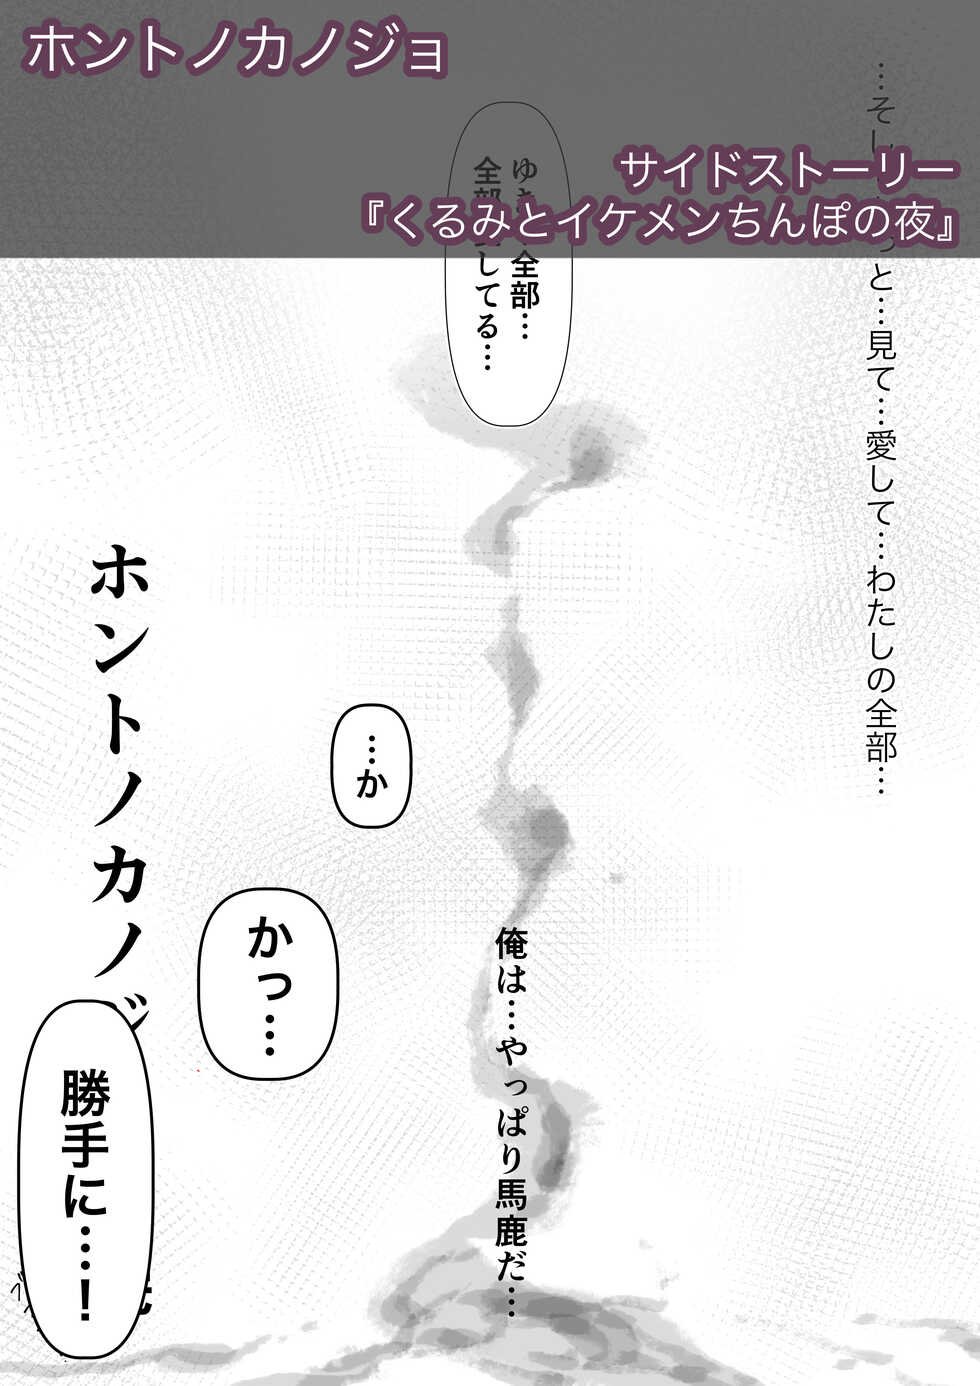 [Takotokite] Honto no Kanojo 3 -Kanojo ga Hoka no Otoko ni Dakaretemo- Side Story - Page 1